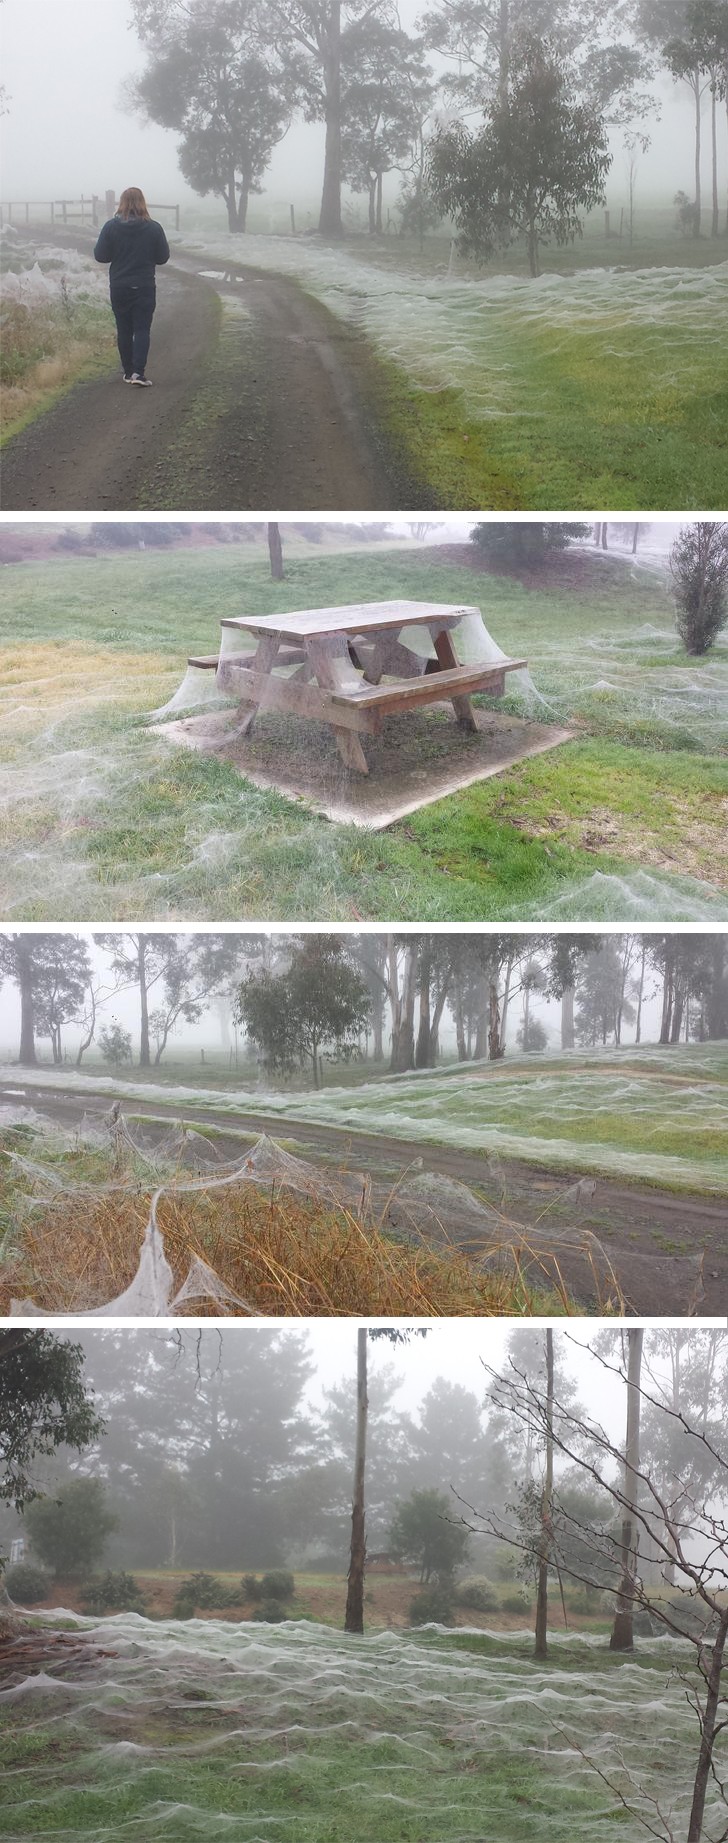 8. Dans cette zone de Victoria, au sud de l'Australie, le parc est couvert de toiles d'araignée ! Une petite promenade ?